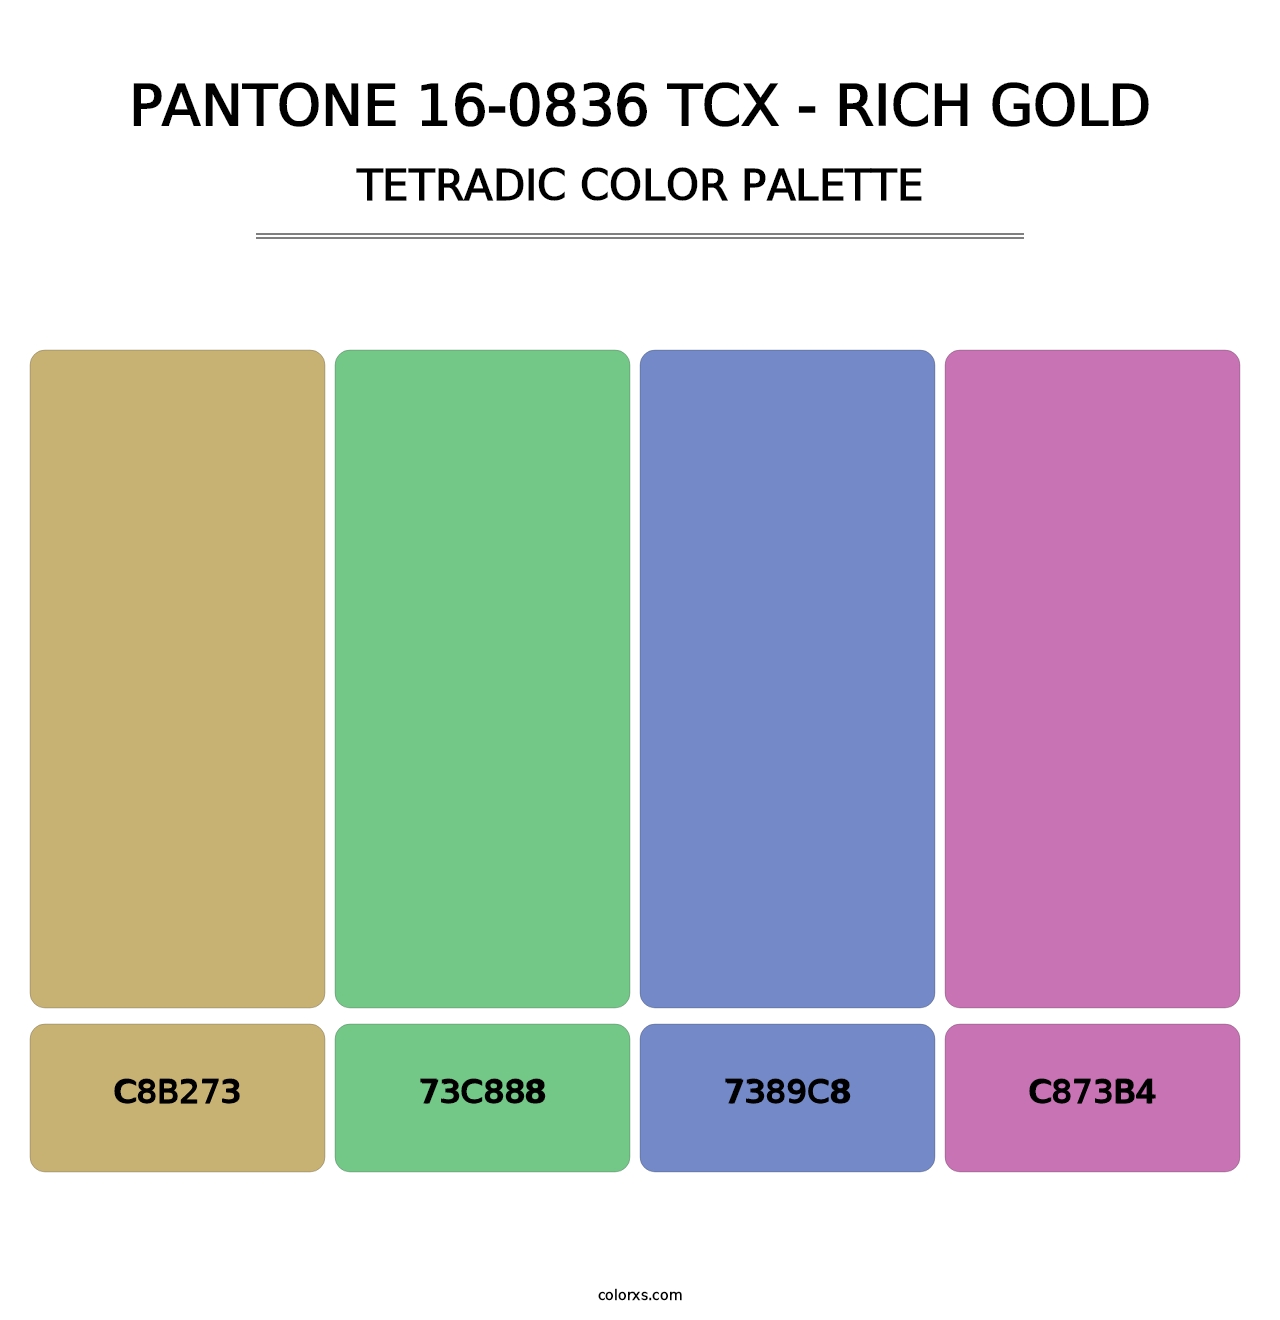 PANTONE 16-0836 TCX - Rich Gold - Tetradic Color Palette